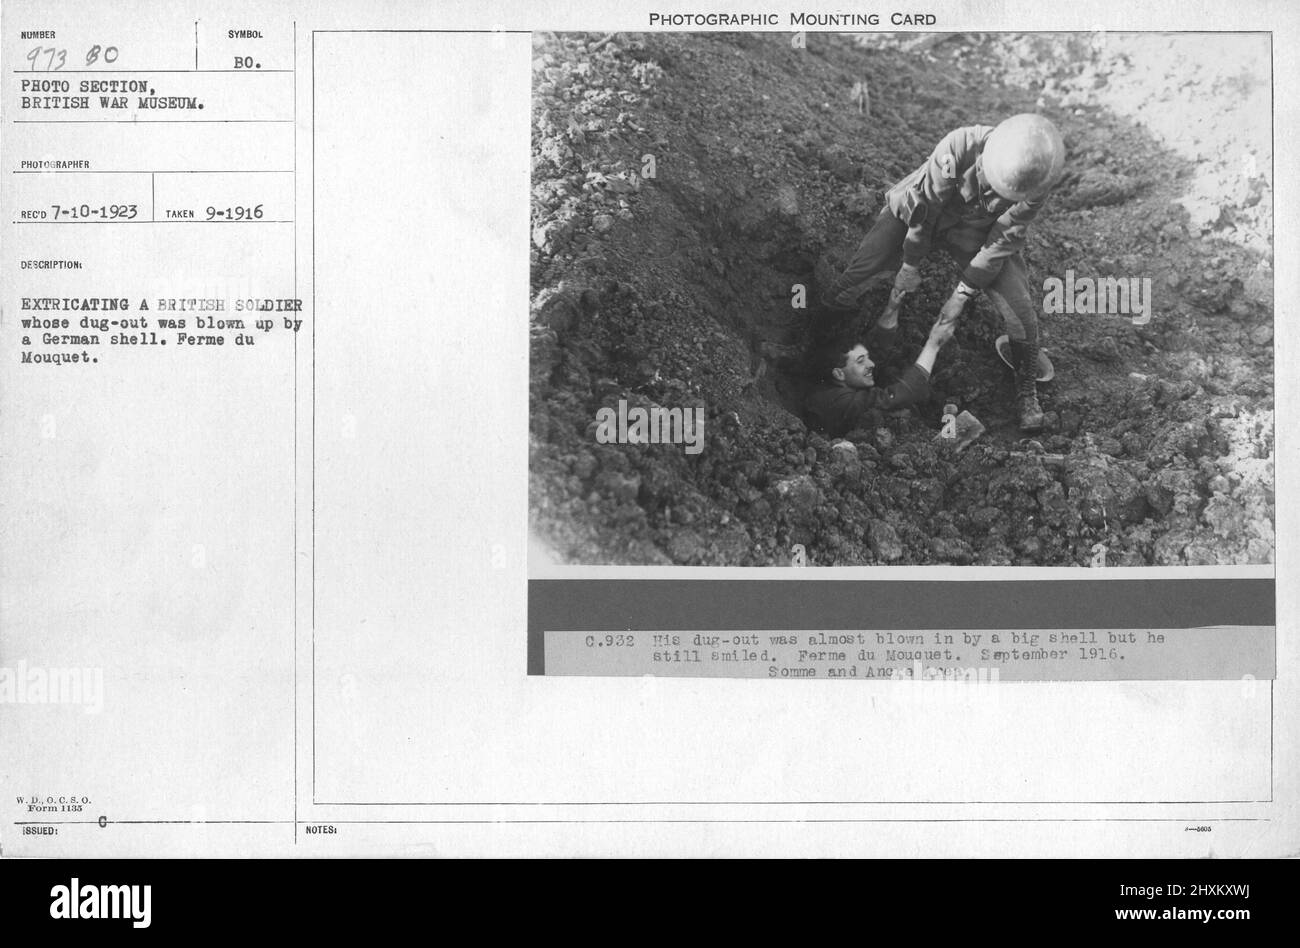 Die Extrahation eines britischen Soldaten, dessen ausgegraben wurde, wurde von einer deutschen Shell gesprengt. Ferme du Mouquet. Sammlung von Fotografien aus dem Ersten Weltkrieg, 1914-1918, die die militärischen Aktivitäten der britischen und anderen Streitkräfte und des Personals während des Ersten Weltkriegs darstellen Stockfoto